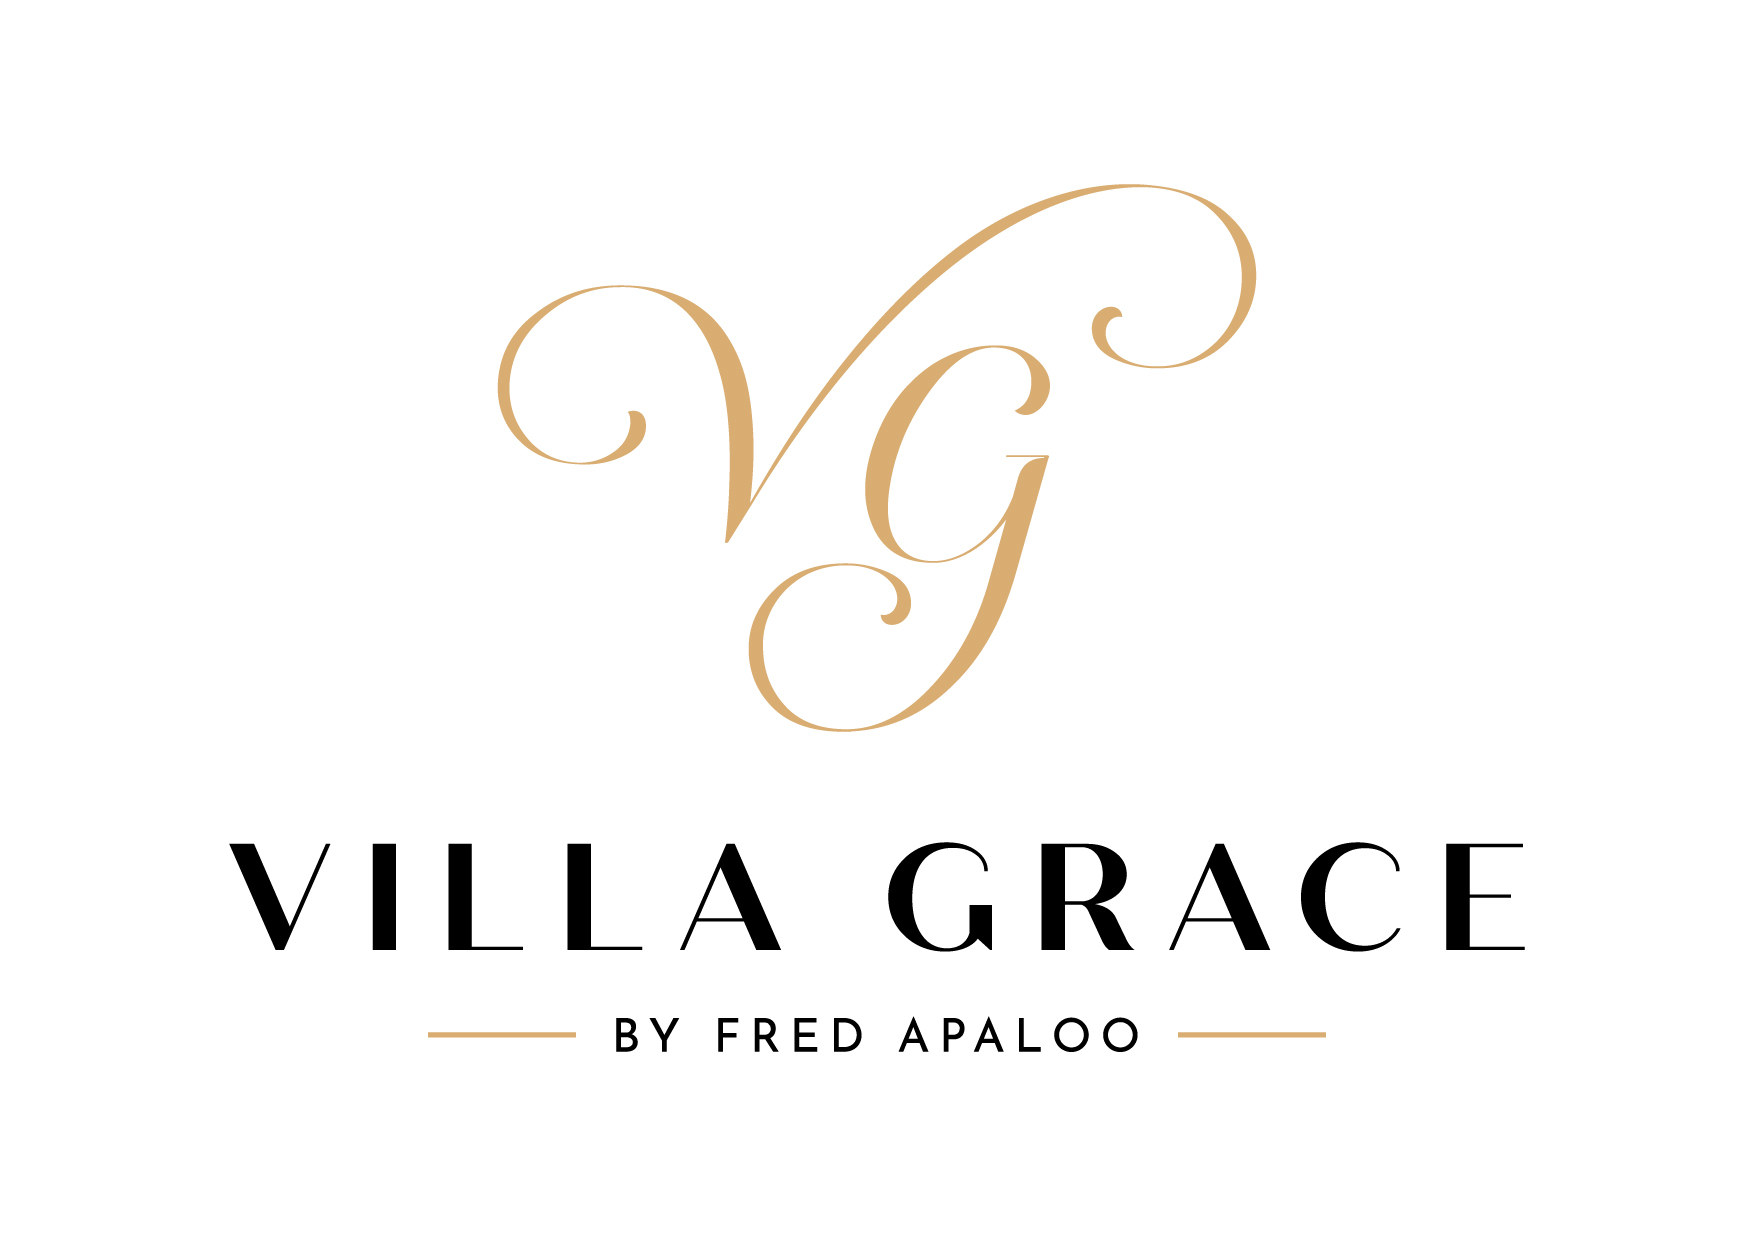 villagrace-branding-1-05